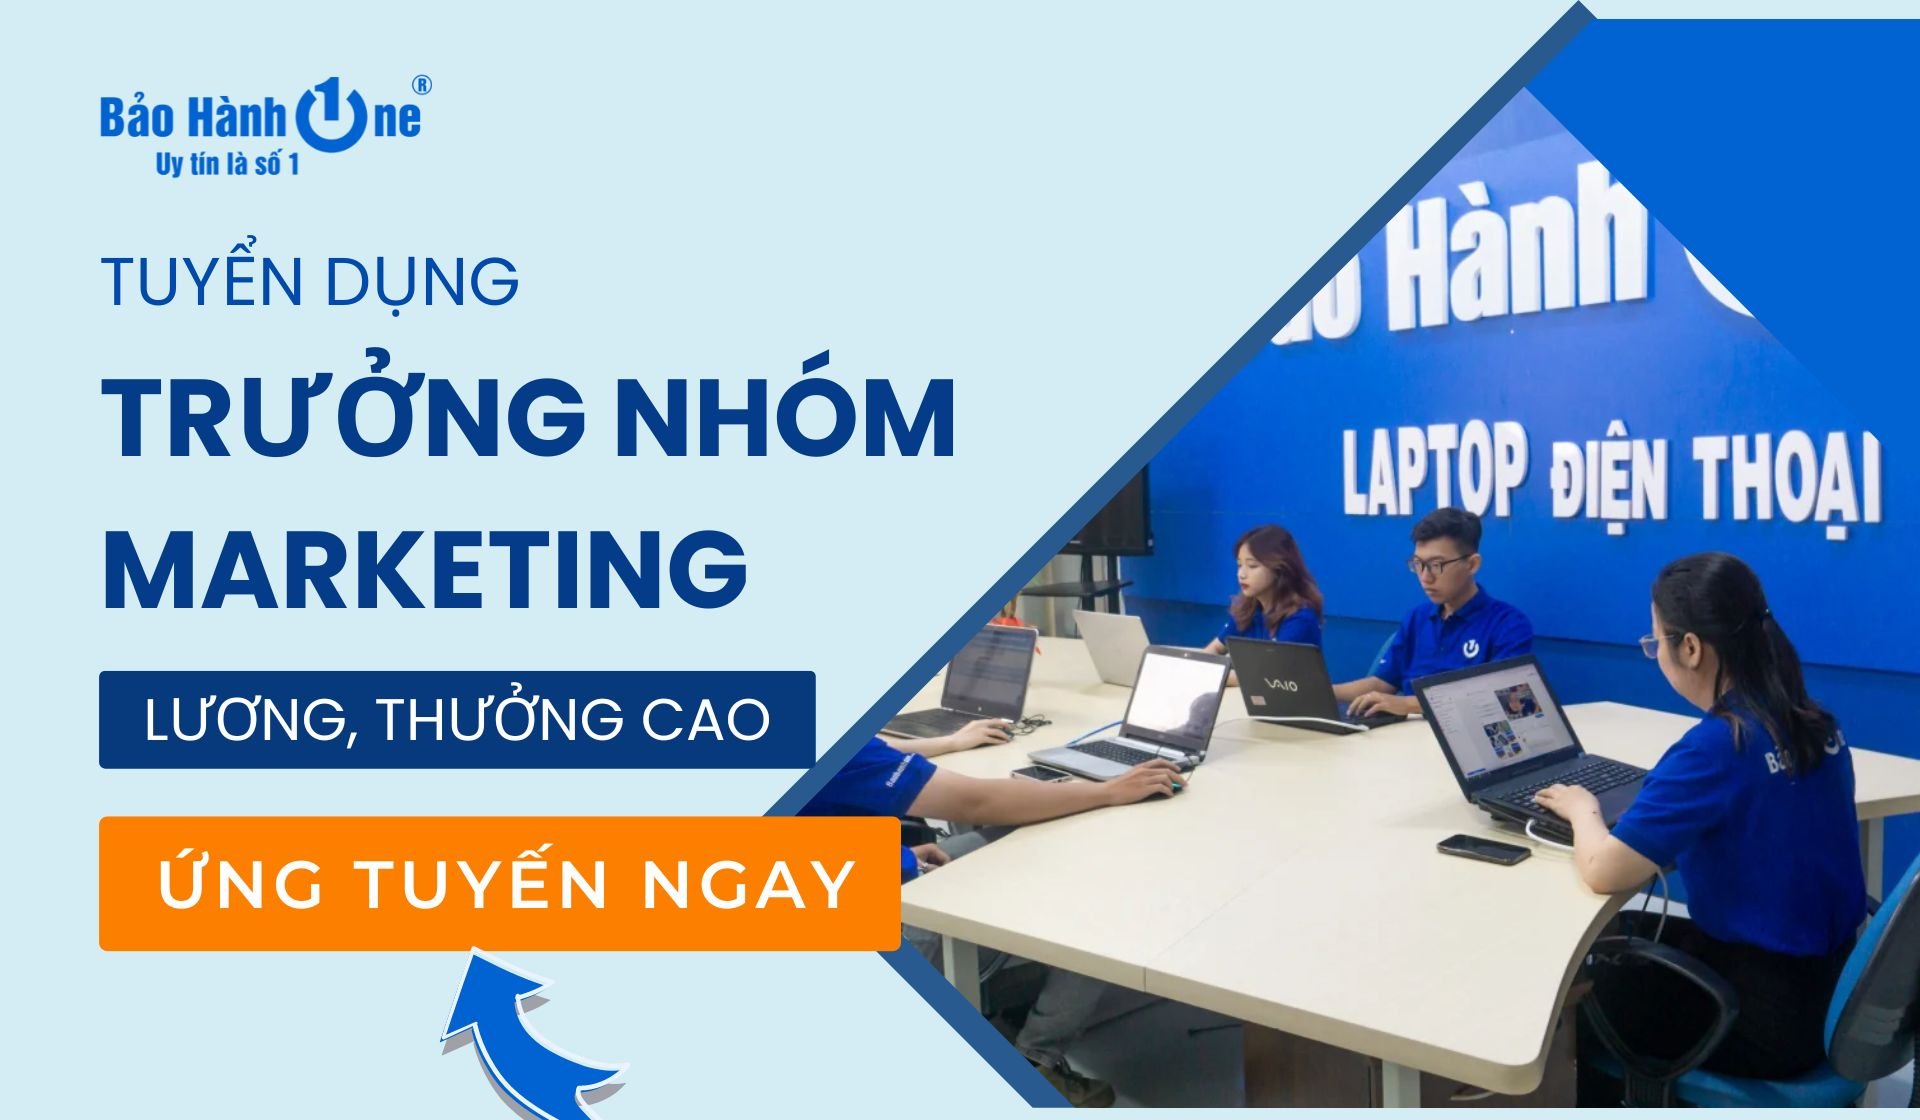 Tuyển dụng Trưởng Nhóm Marketing tại Quận 1, Quận 10, Quận Tân Phú